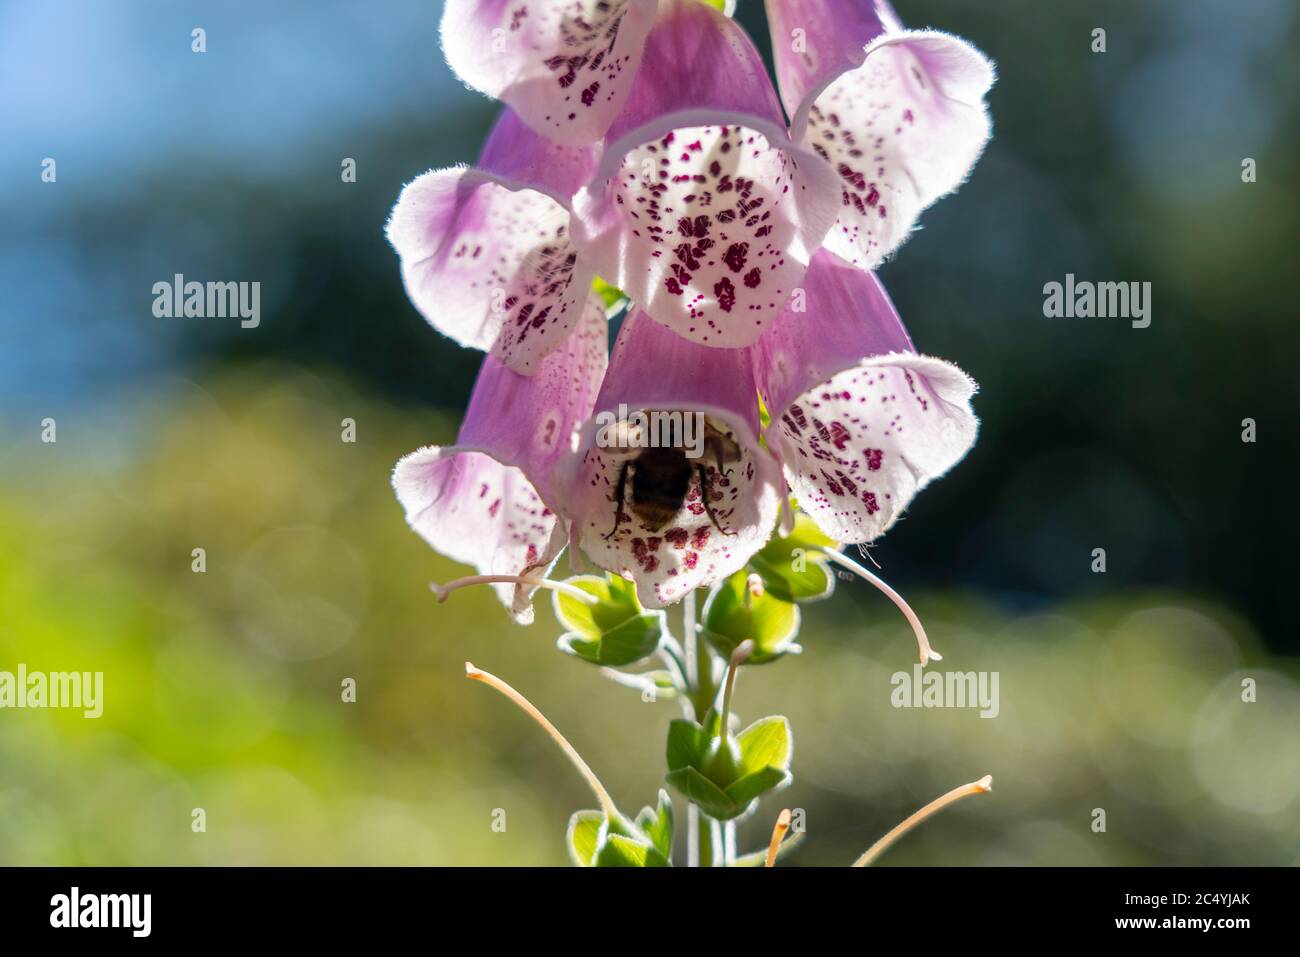 Pink thimble, digitalis purpurea, poisonous plant, Stock Photo